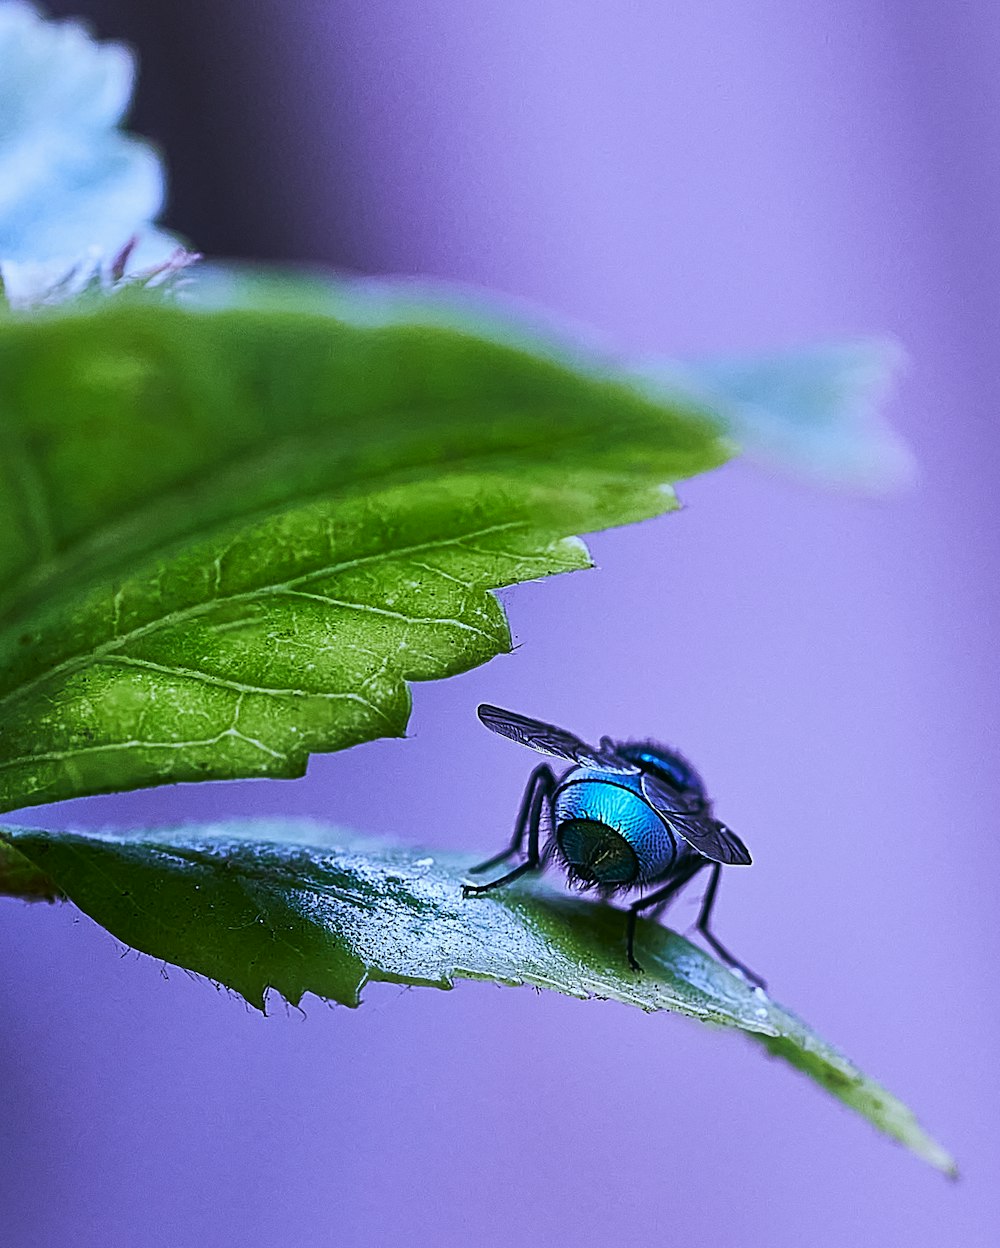 Una mosca azul sentada encima de una hoja verde